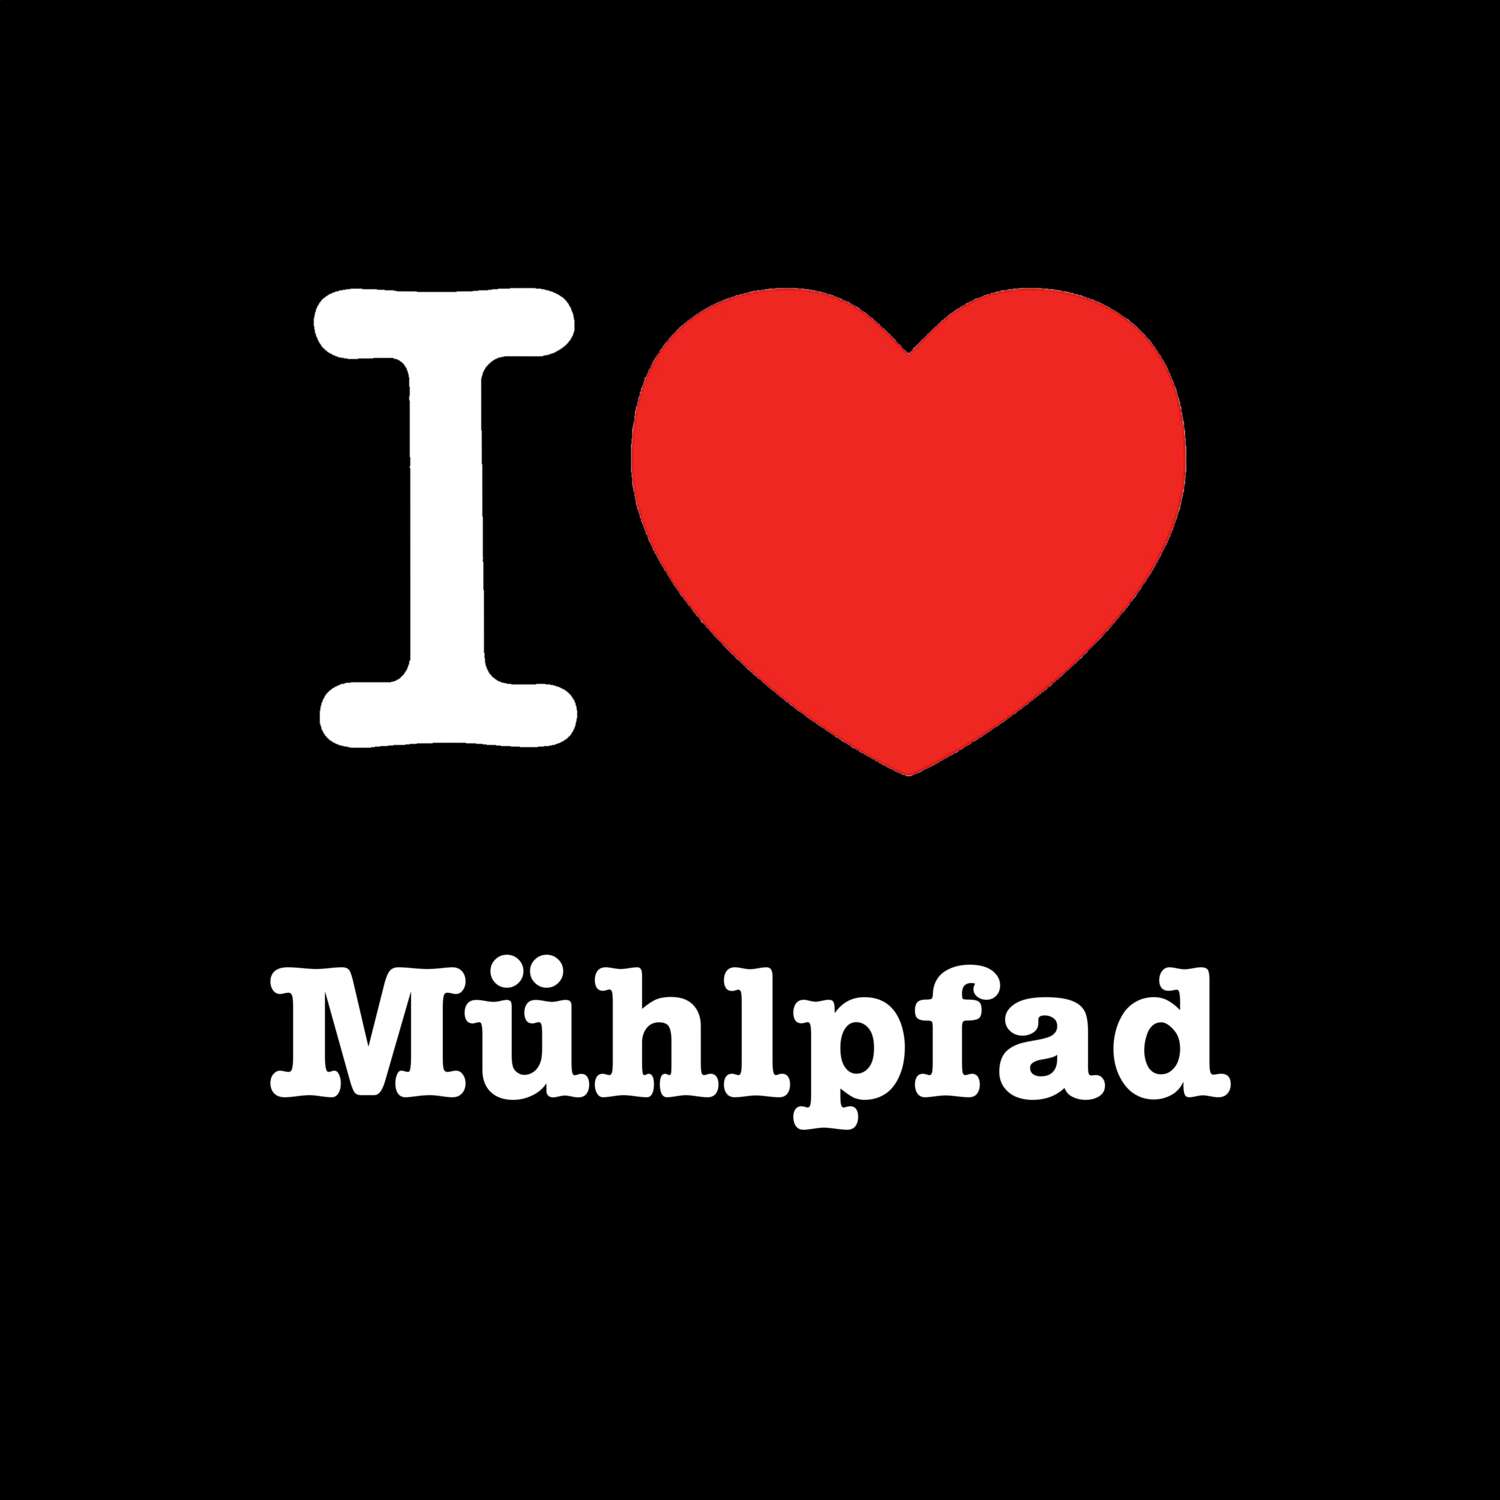 Mühlpfad T-Shirt »I love«